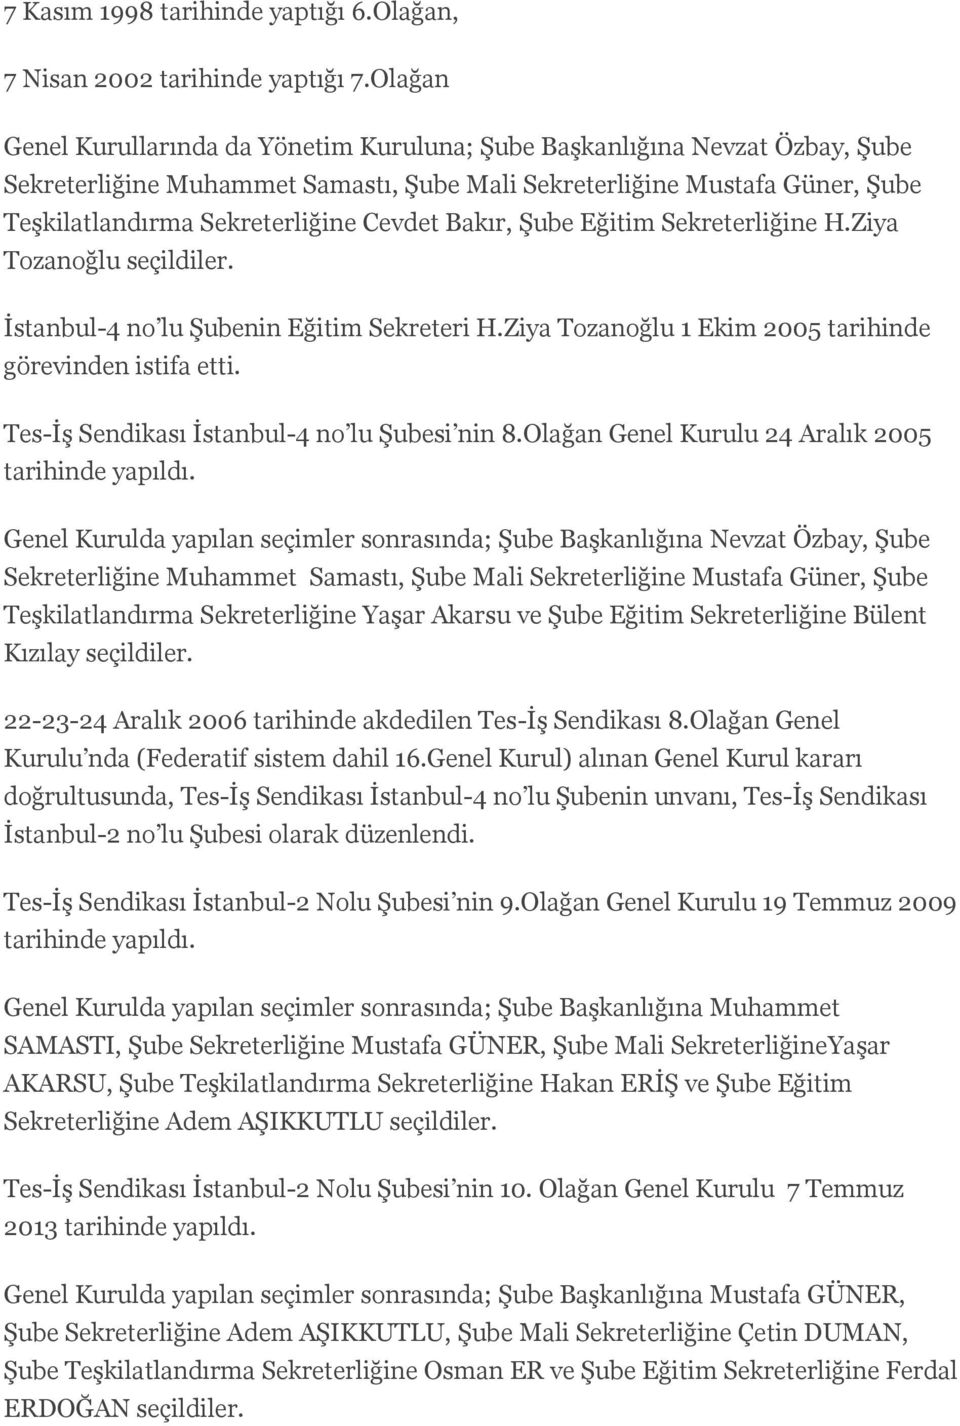 Cevdet Bakır, Şube Eğitim Sekreterliğine H.Ziya Tozanoğlu seçildiler. İstanbul-4 no lu Şubenin Eğitim Sekreteri H.Ziya Tozanoğlu 1 Ekim 2005 tarihinde görevinden istifa etti.